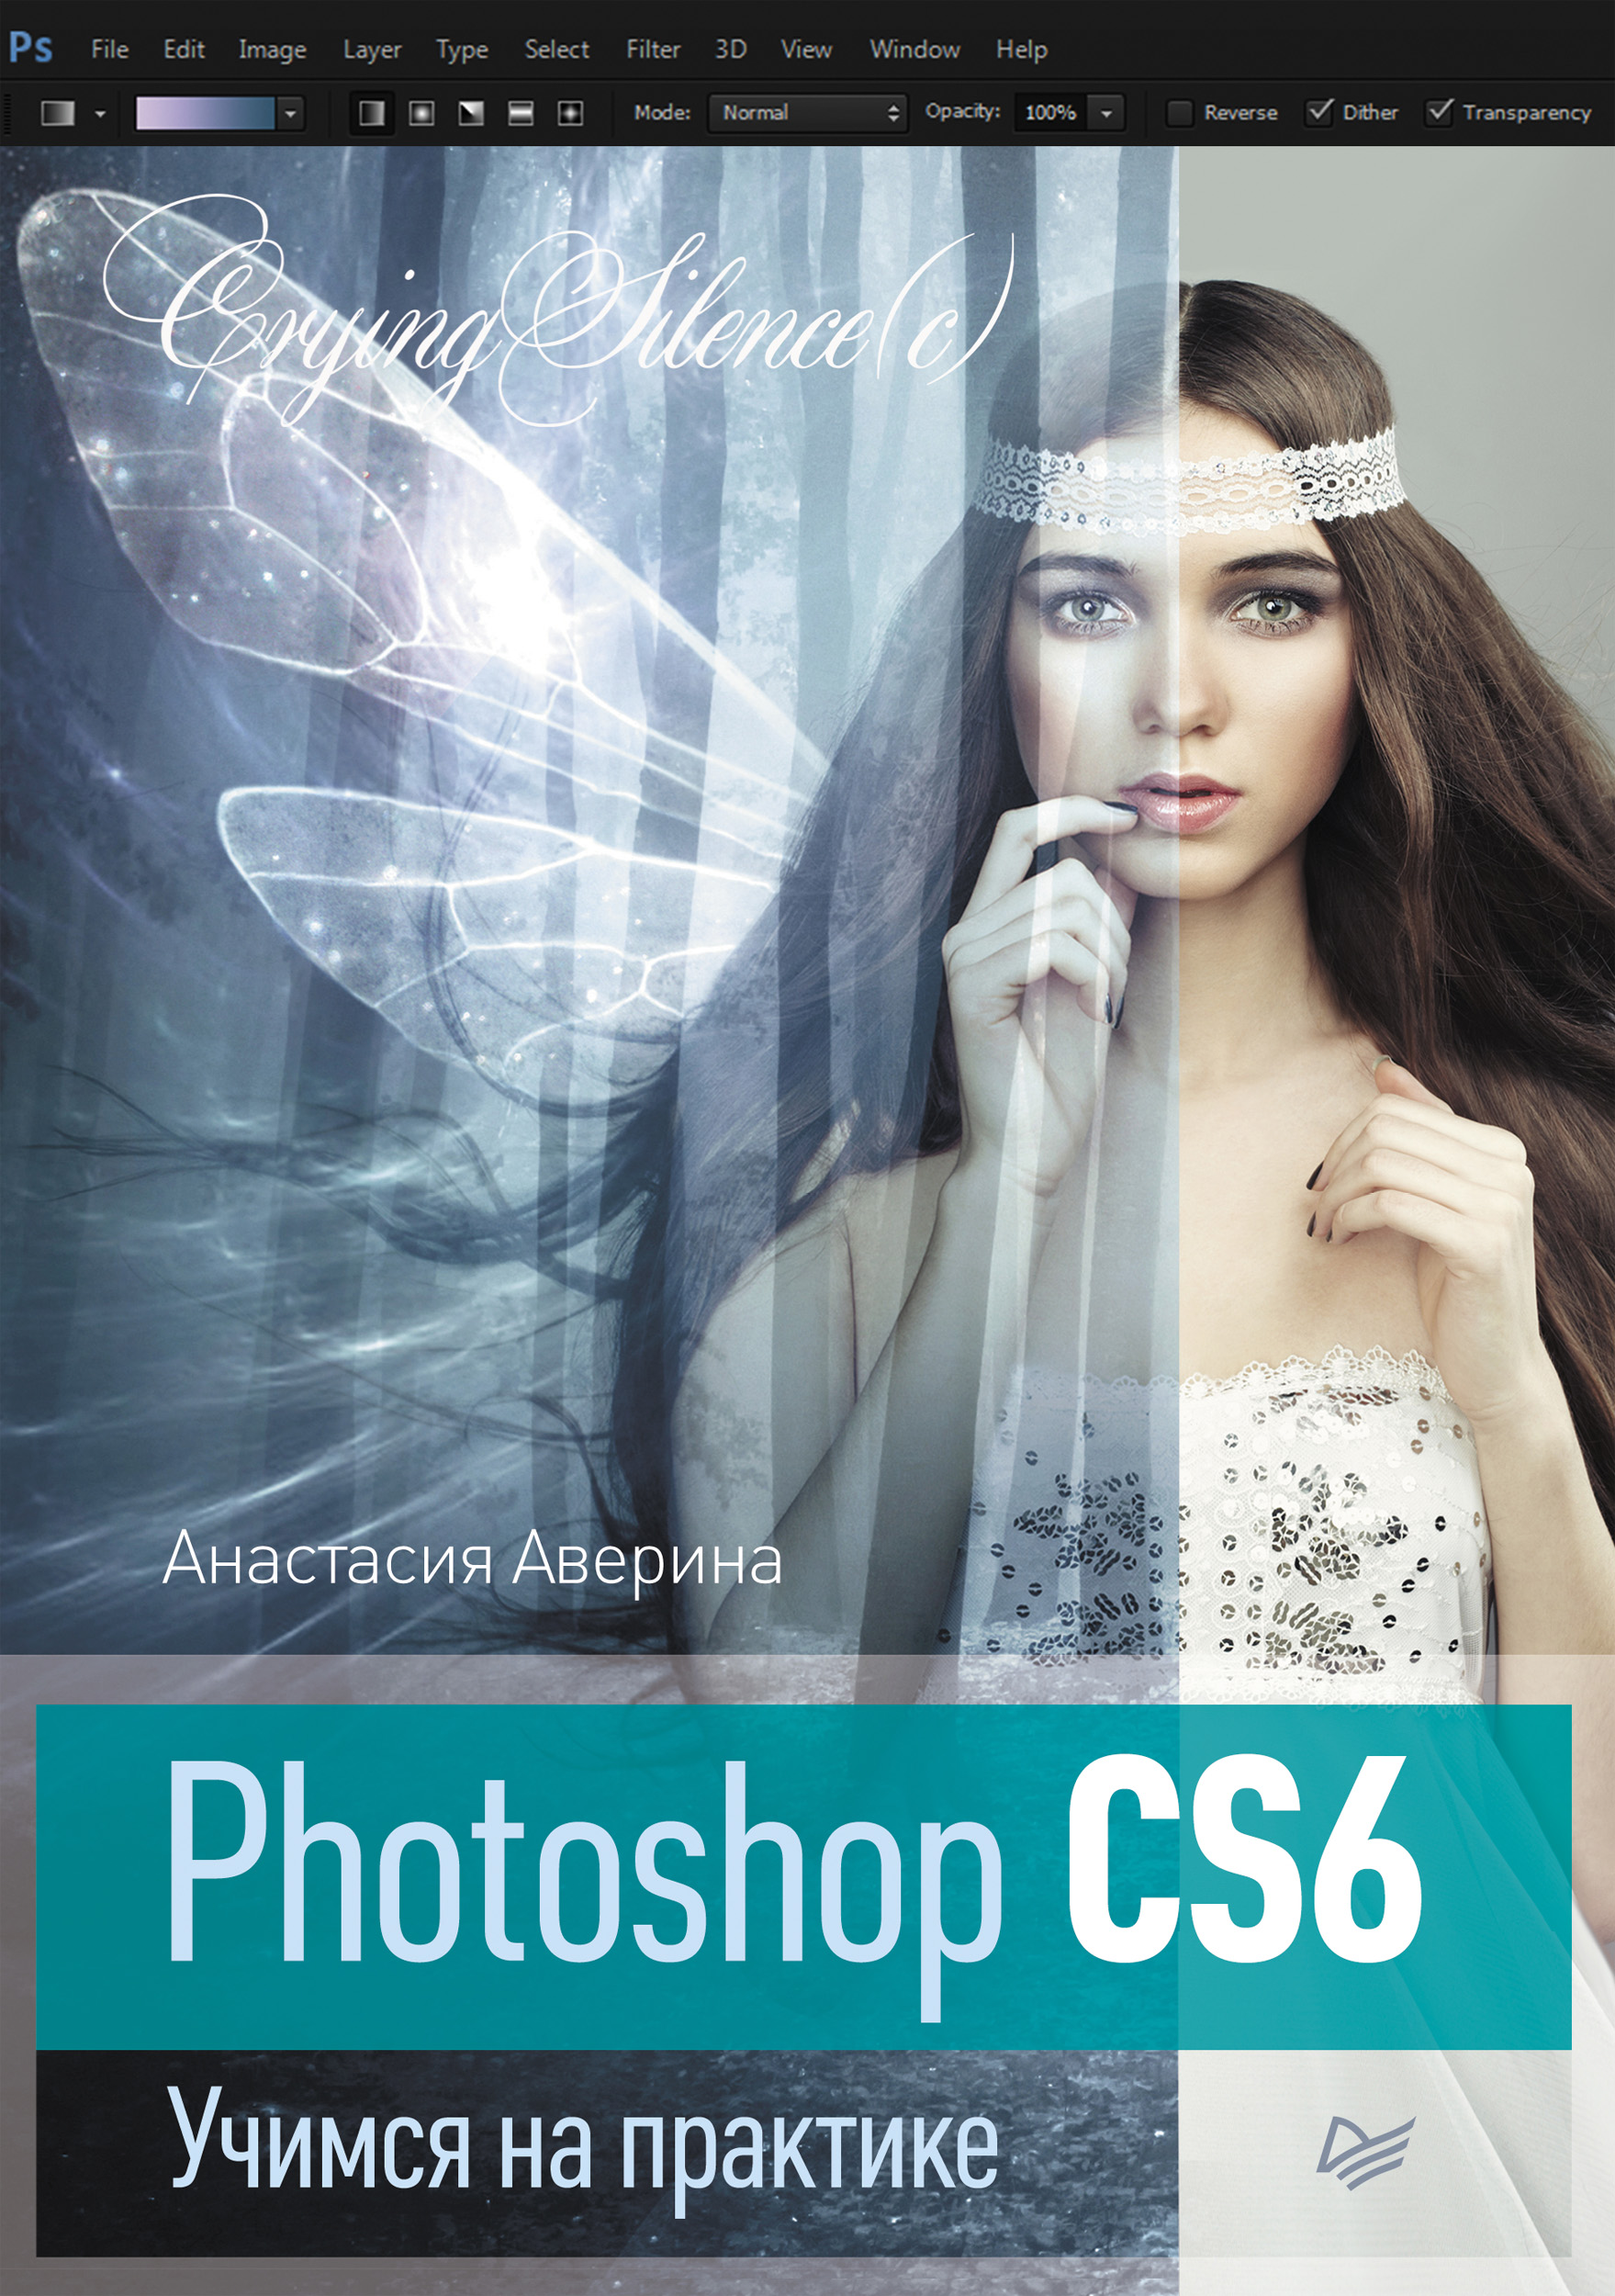 Книга  Photoshop CS6. Учимся на практике созданная Анастасия Аверина может относится к жанру изобразительное искусство, программы. Стоимость электронной книги Photoshop CS6. Учимся на практике с идентификатором 6524299 составляет 459.00 руб.